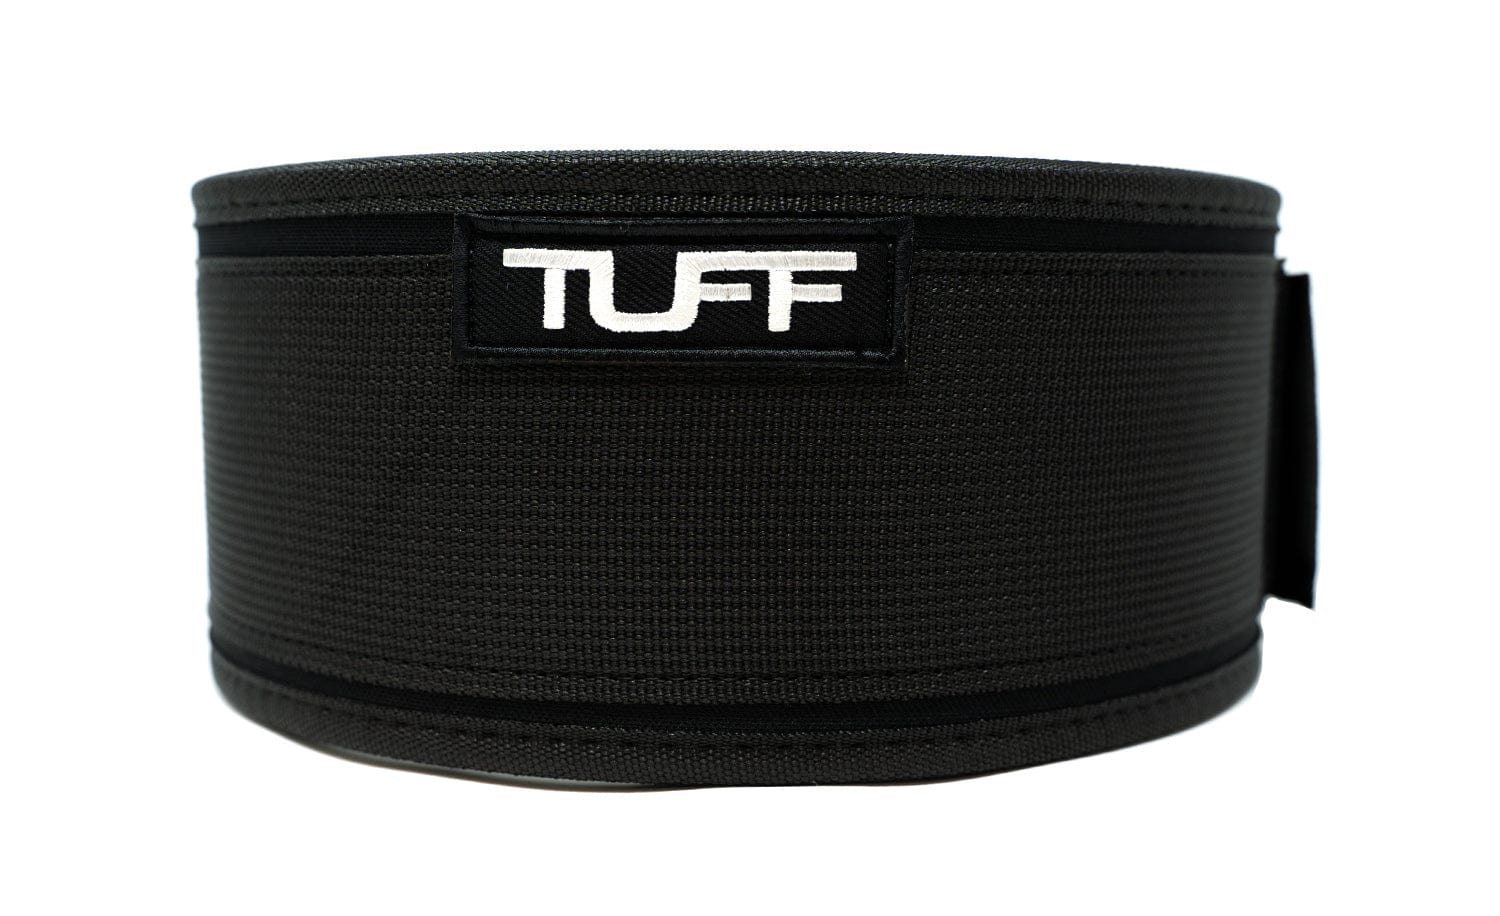 TUFF Self Locking Weightlifting Belt - All Black - TuffWrapsUK